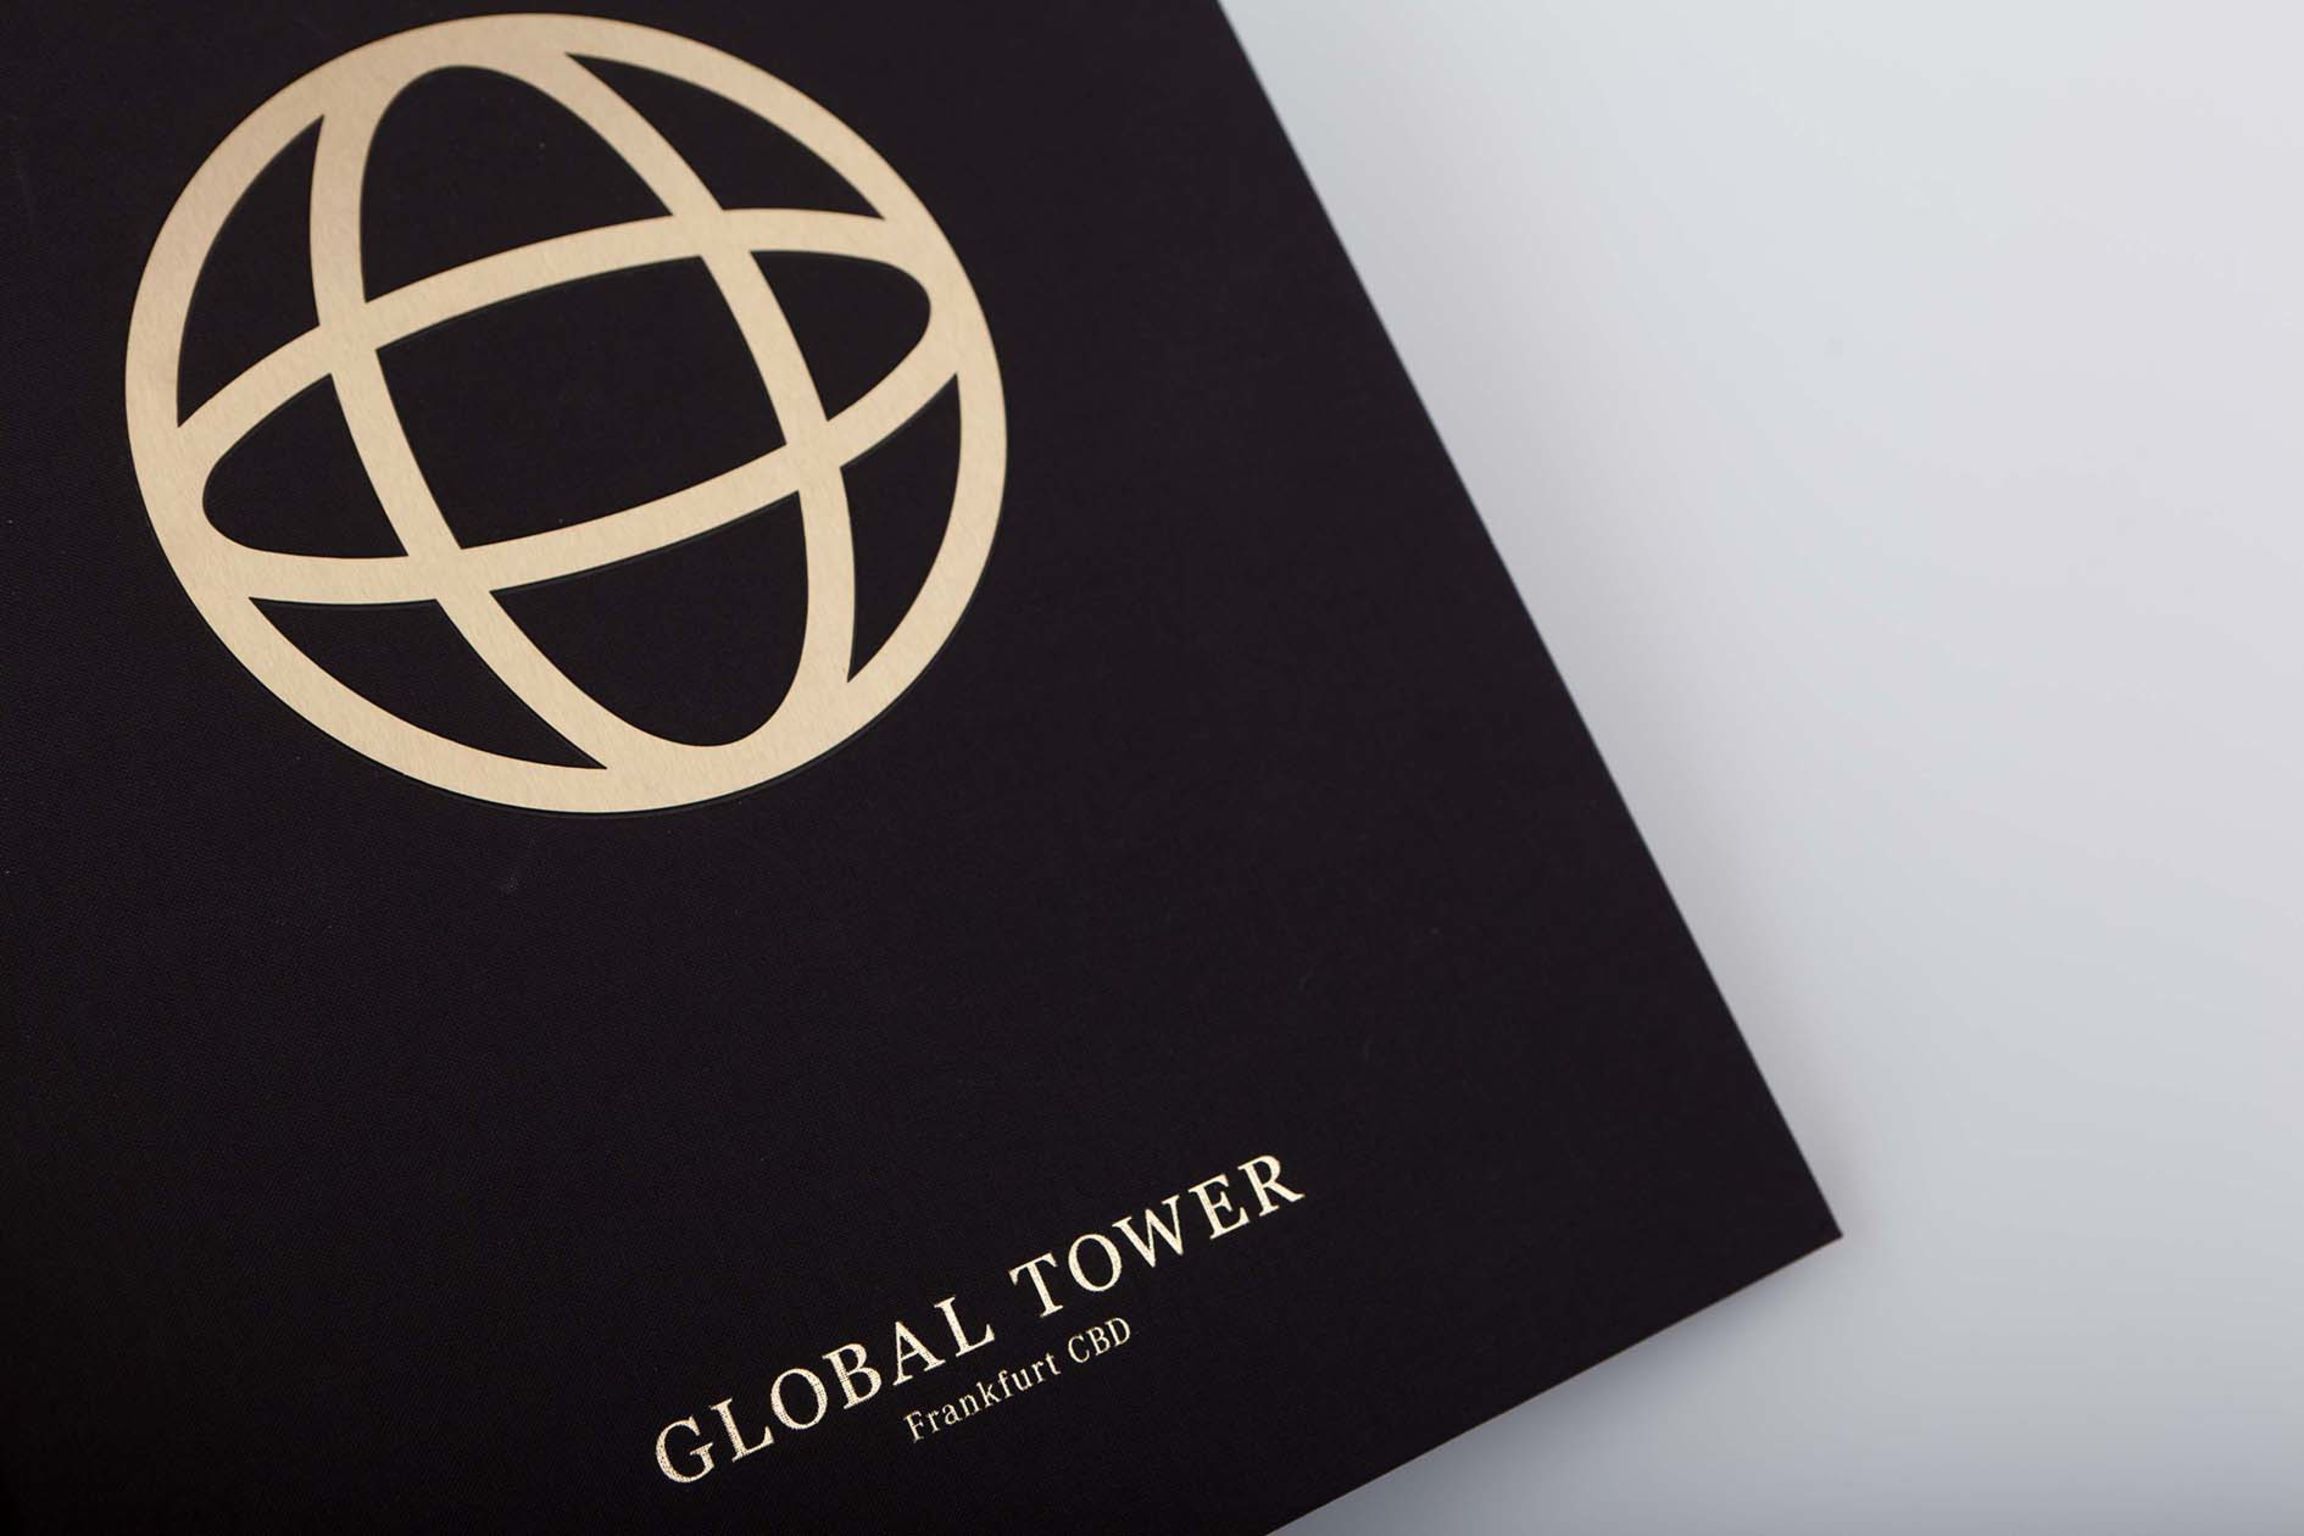 Global Tower Lookbook